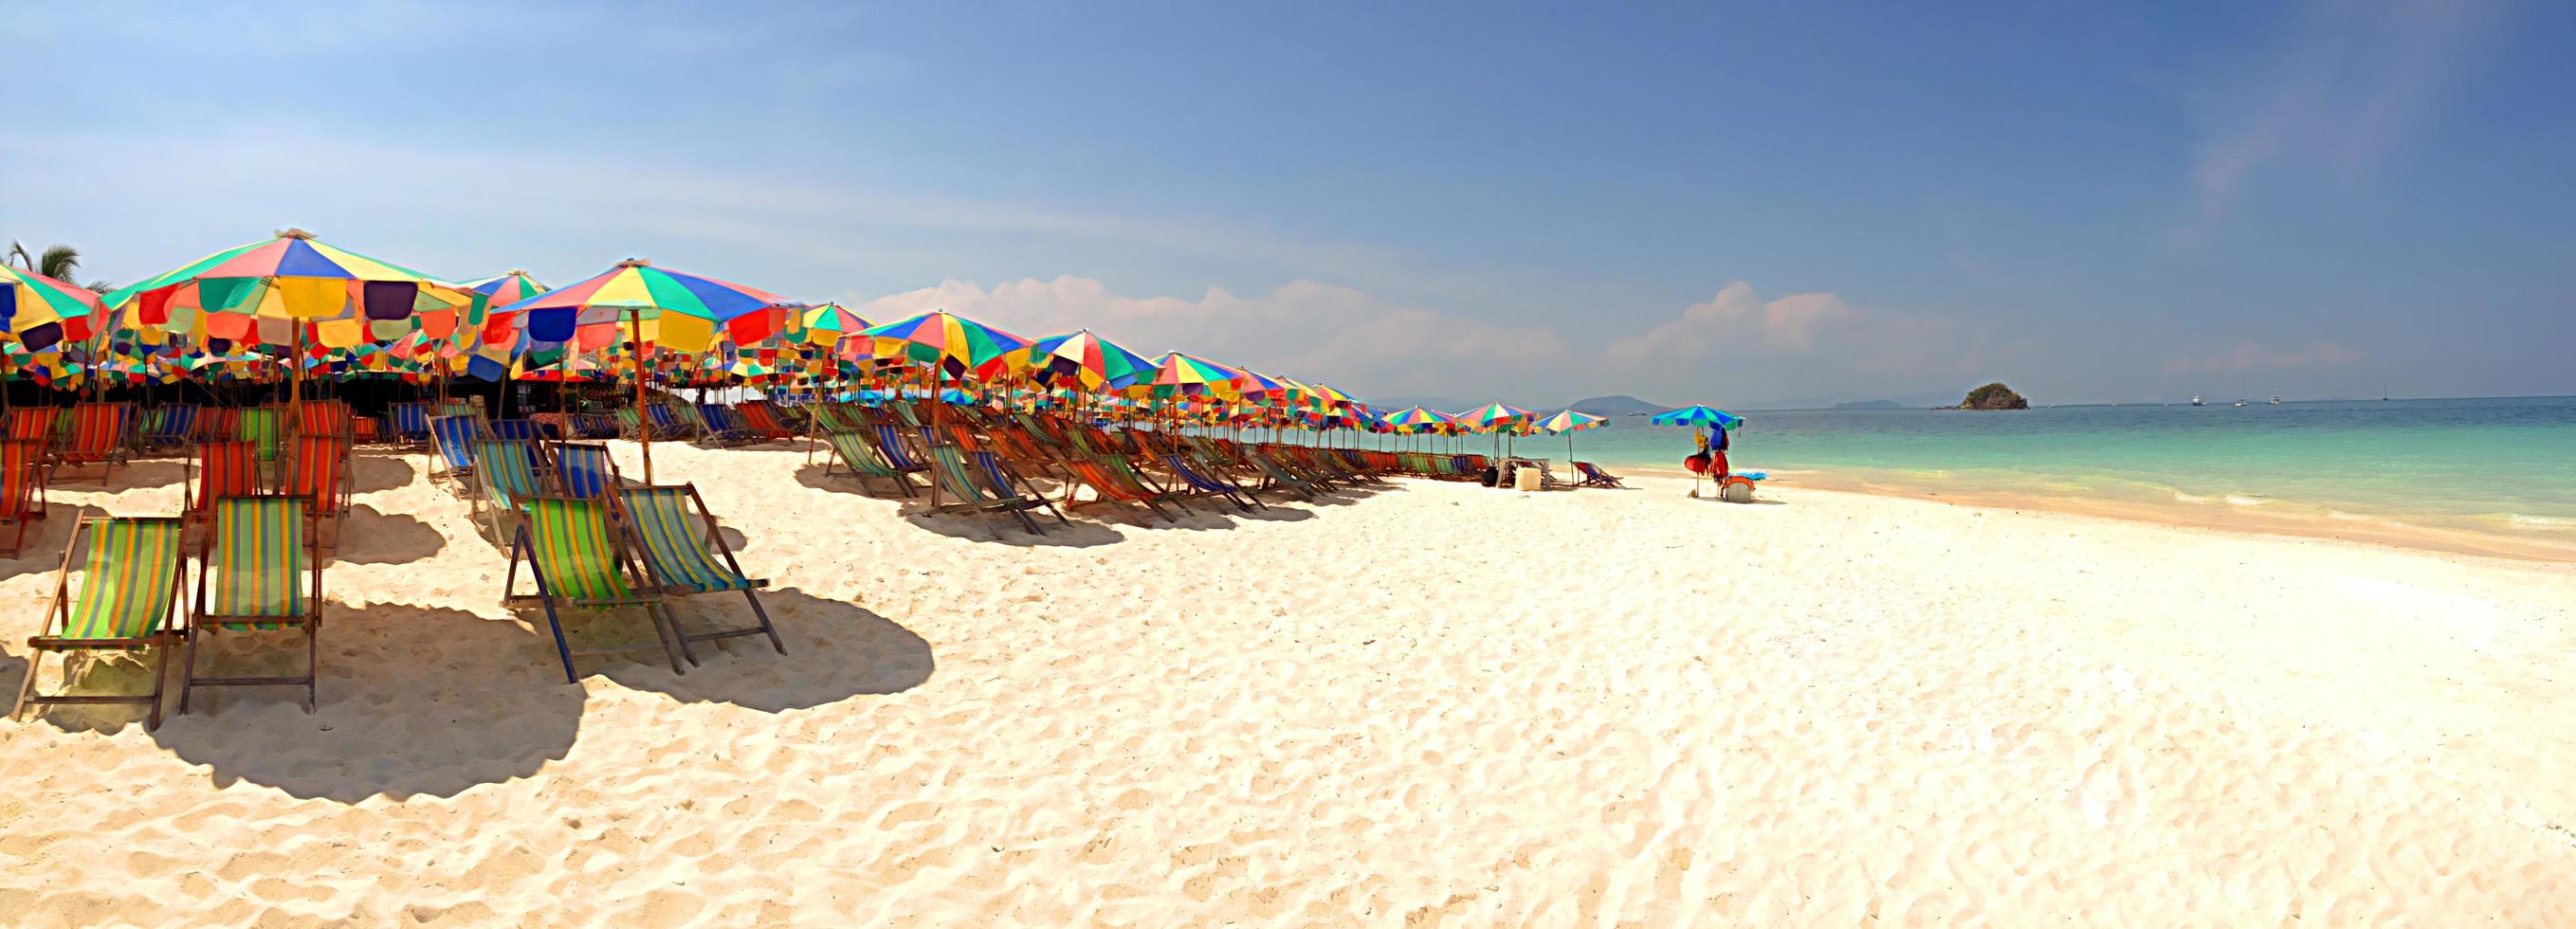 panorama di ombrelloni colorati e poltrone sulla spiaggia foto